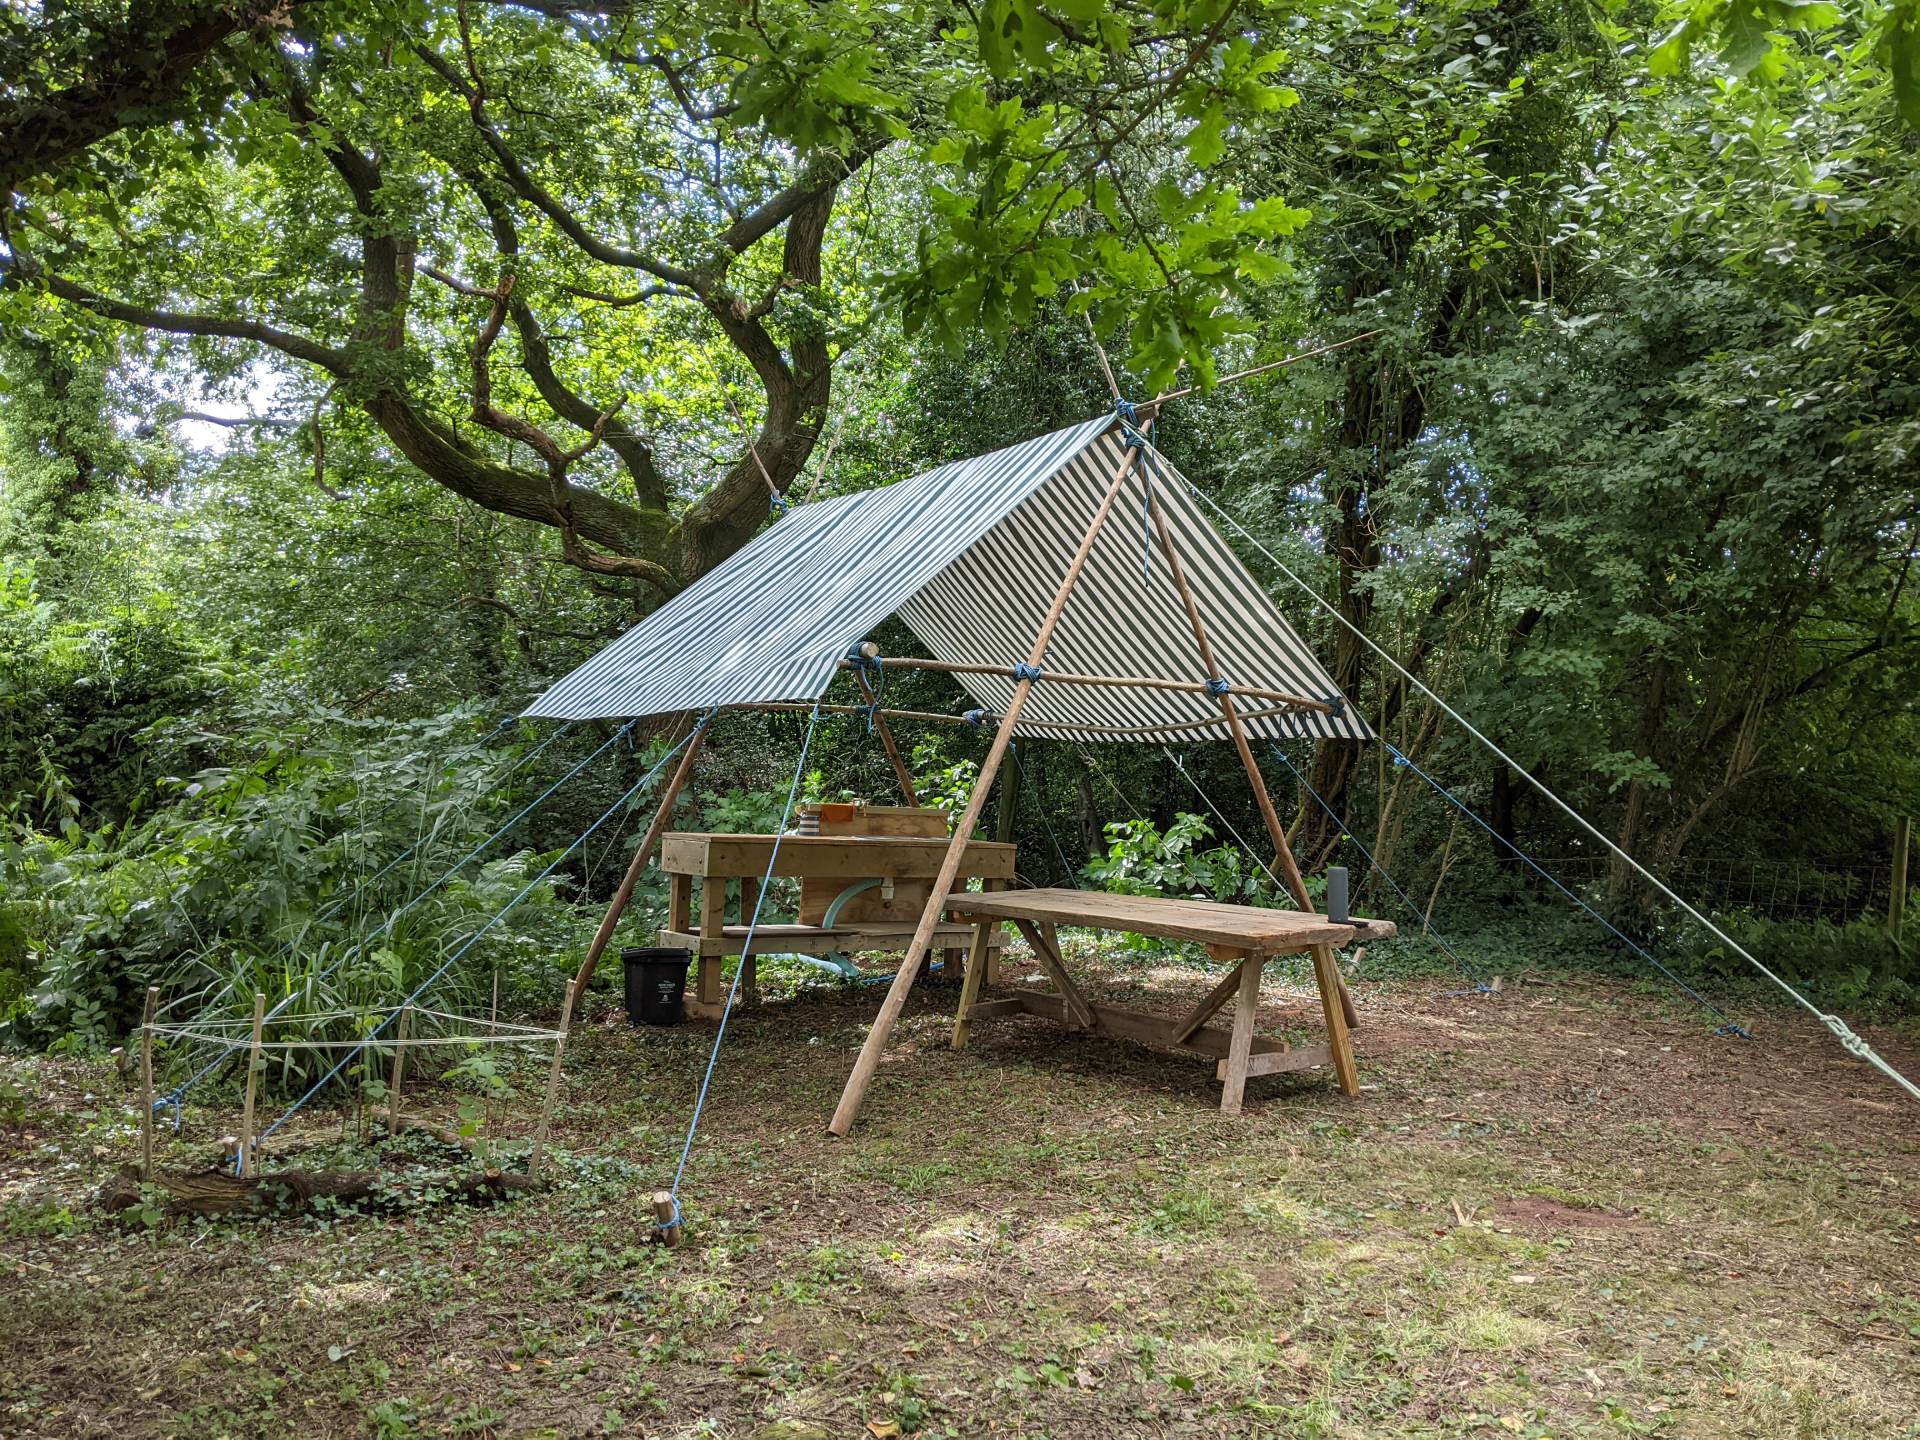 Camp Kitchen at Swallow Barn Wood